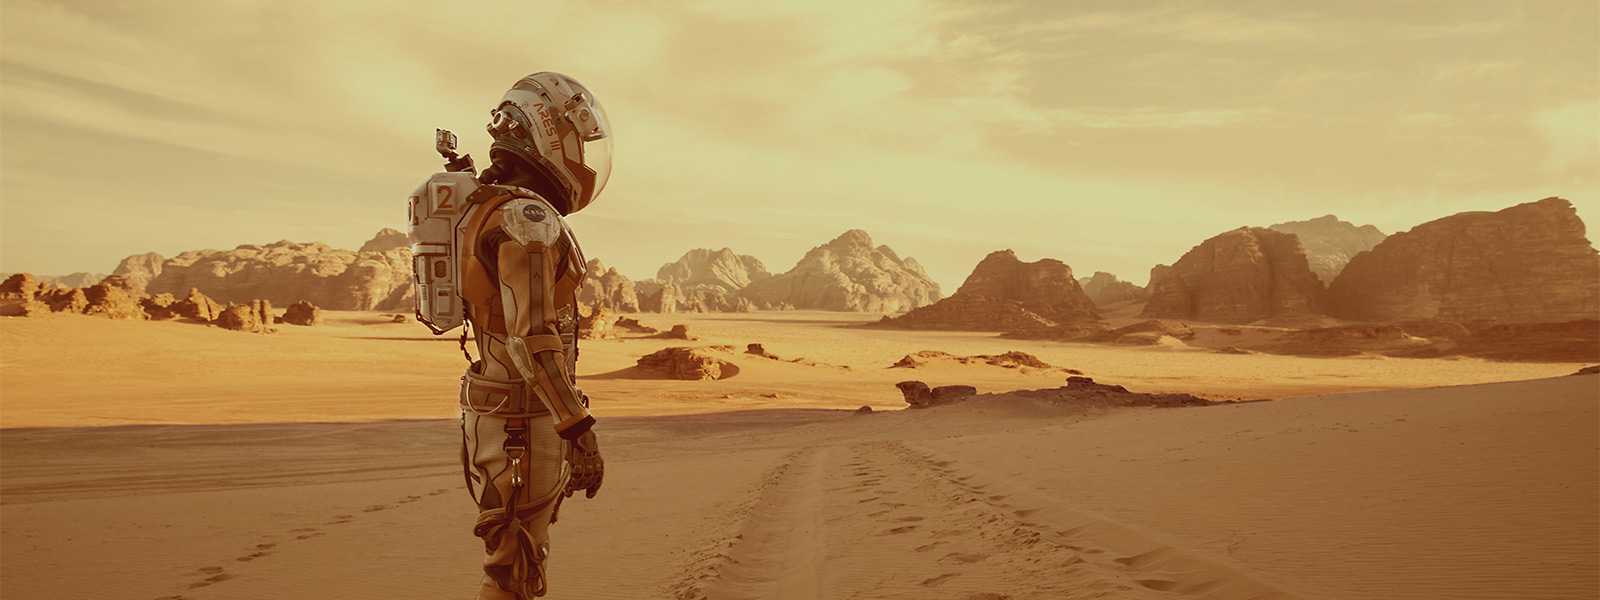 Вперед, к марсу! как ученые, писатели и киношники представляют себе освоение красной планеты